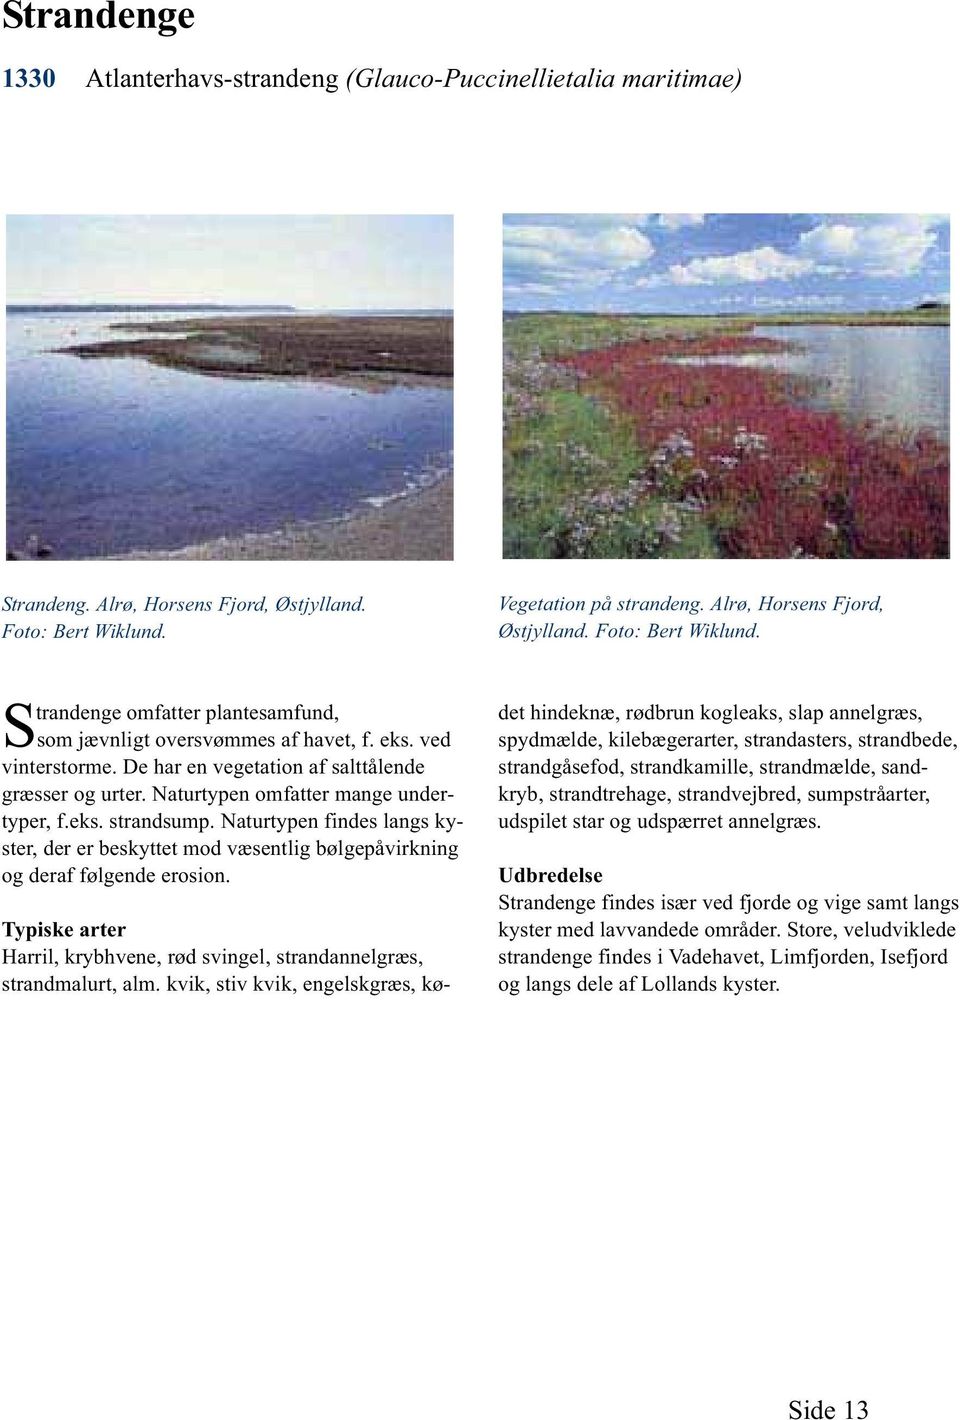 Naturtypen findes langs kyster, der er beskyttet mod væsentlig bølgepåvirkning og deraf følgende erosion. Vegetation på strandeng. Alrø, Horsens Fjord, Østjylland. Foto: Bert Wiklund.